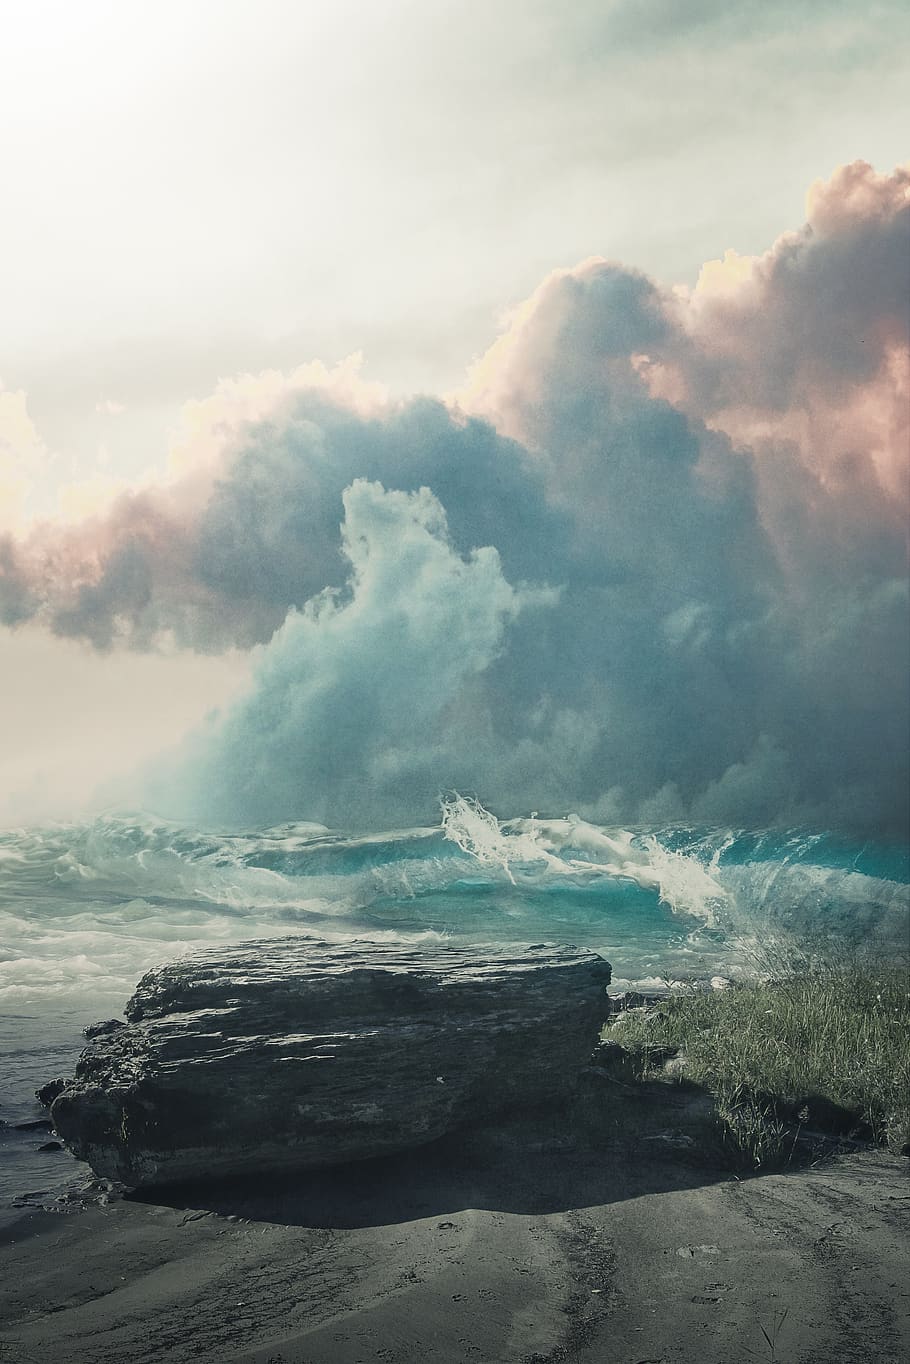 paisaje, fantasía, paisaje de fantasía, mar, roca, agua, ola, cielo, nubes, cielo dramático